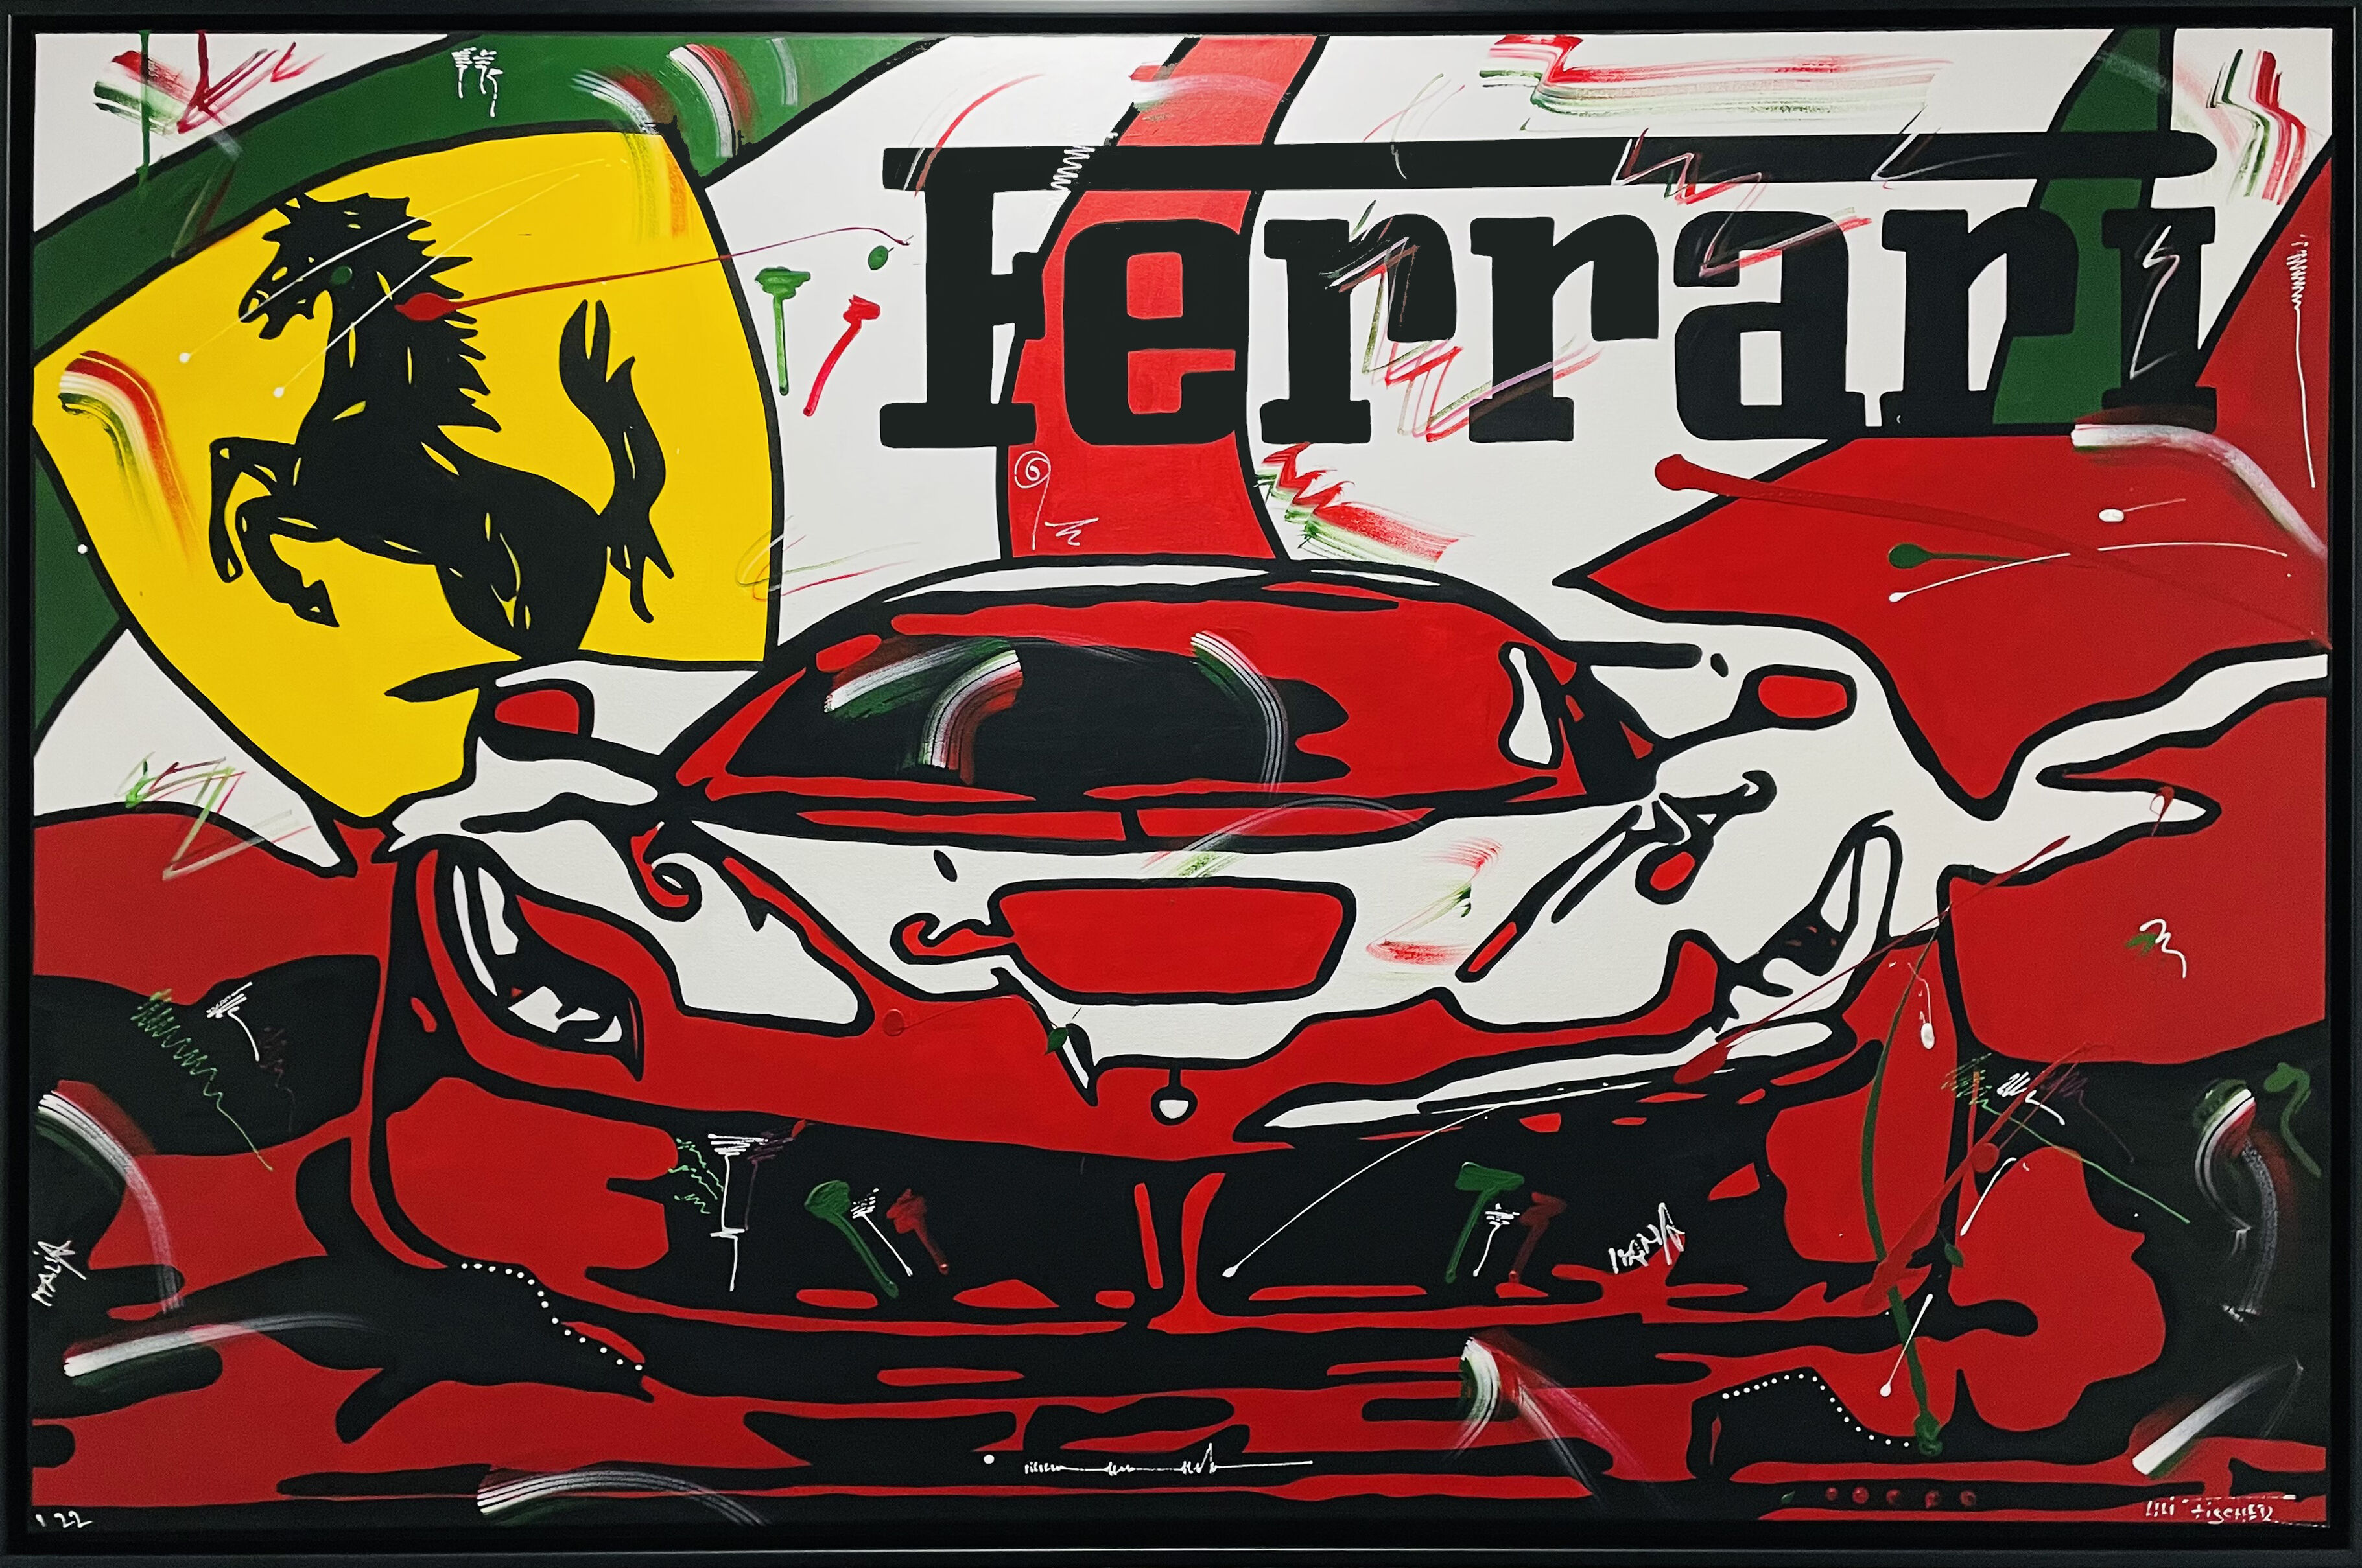 Ferrari LaFerrari Pop Art 11 Sweatshirt